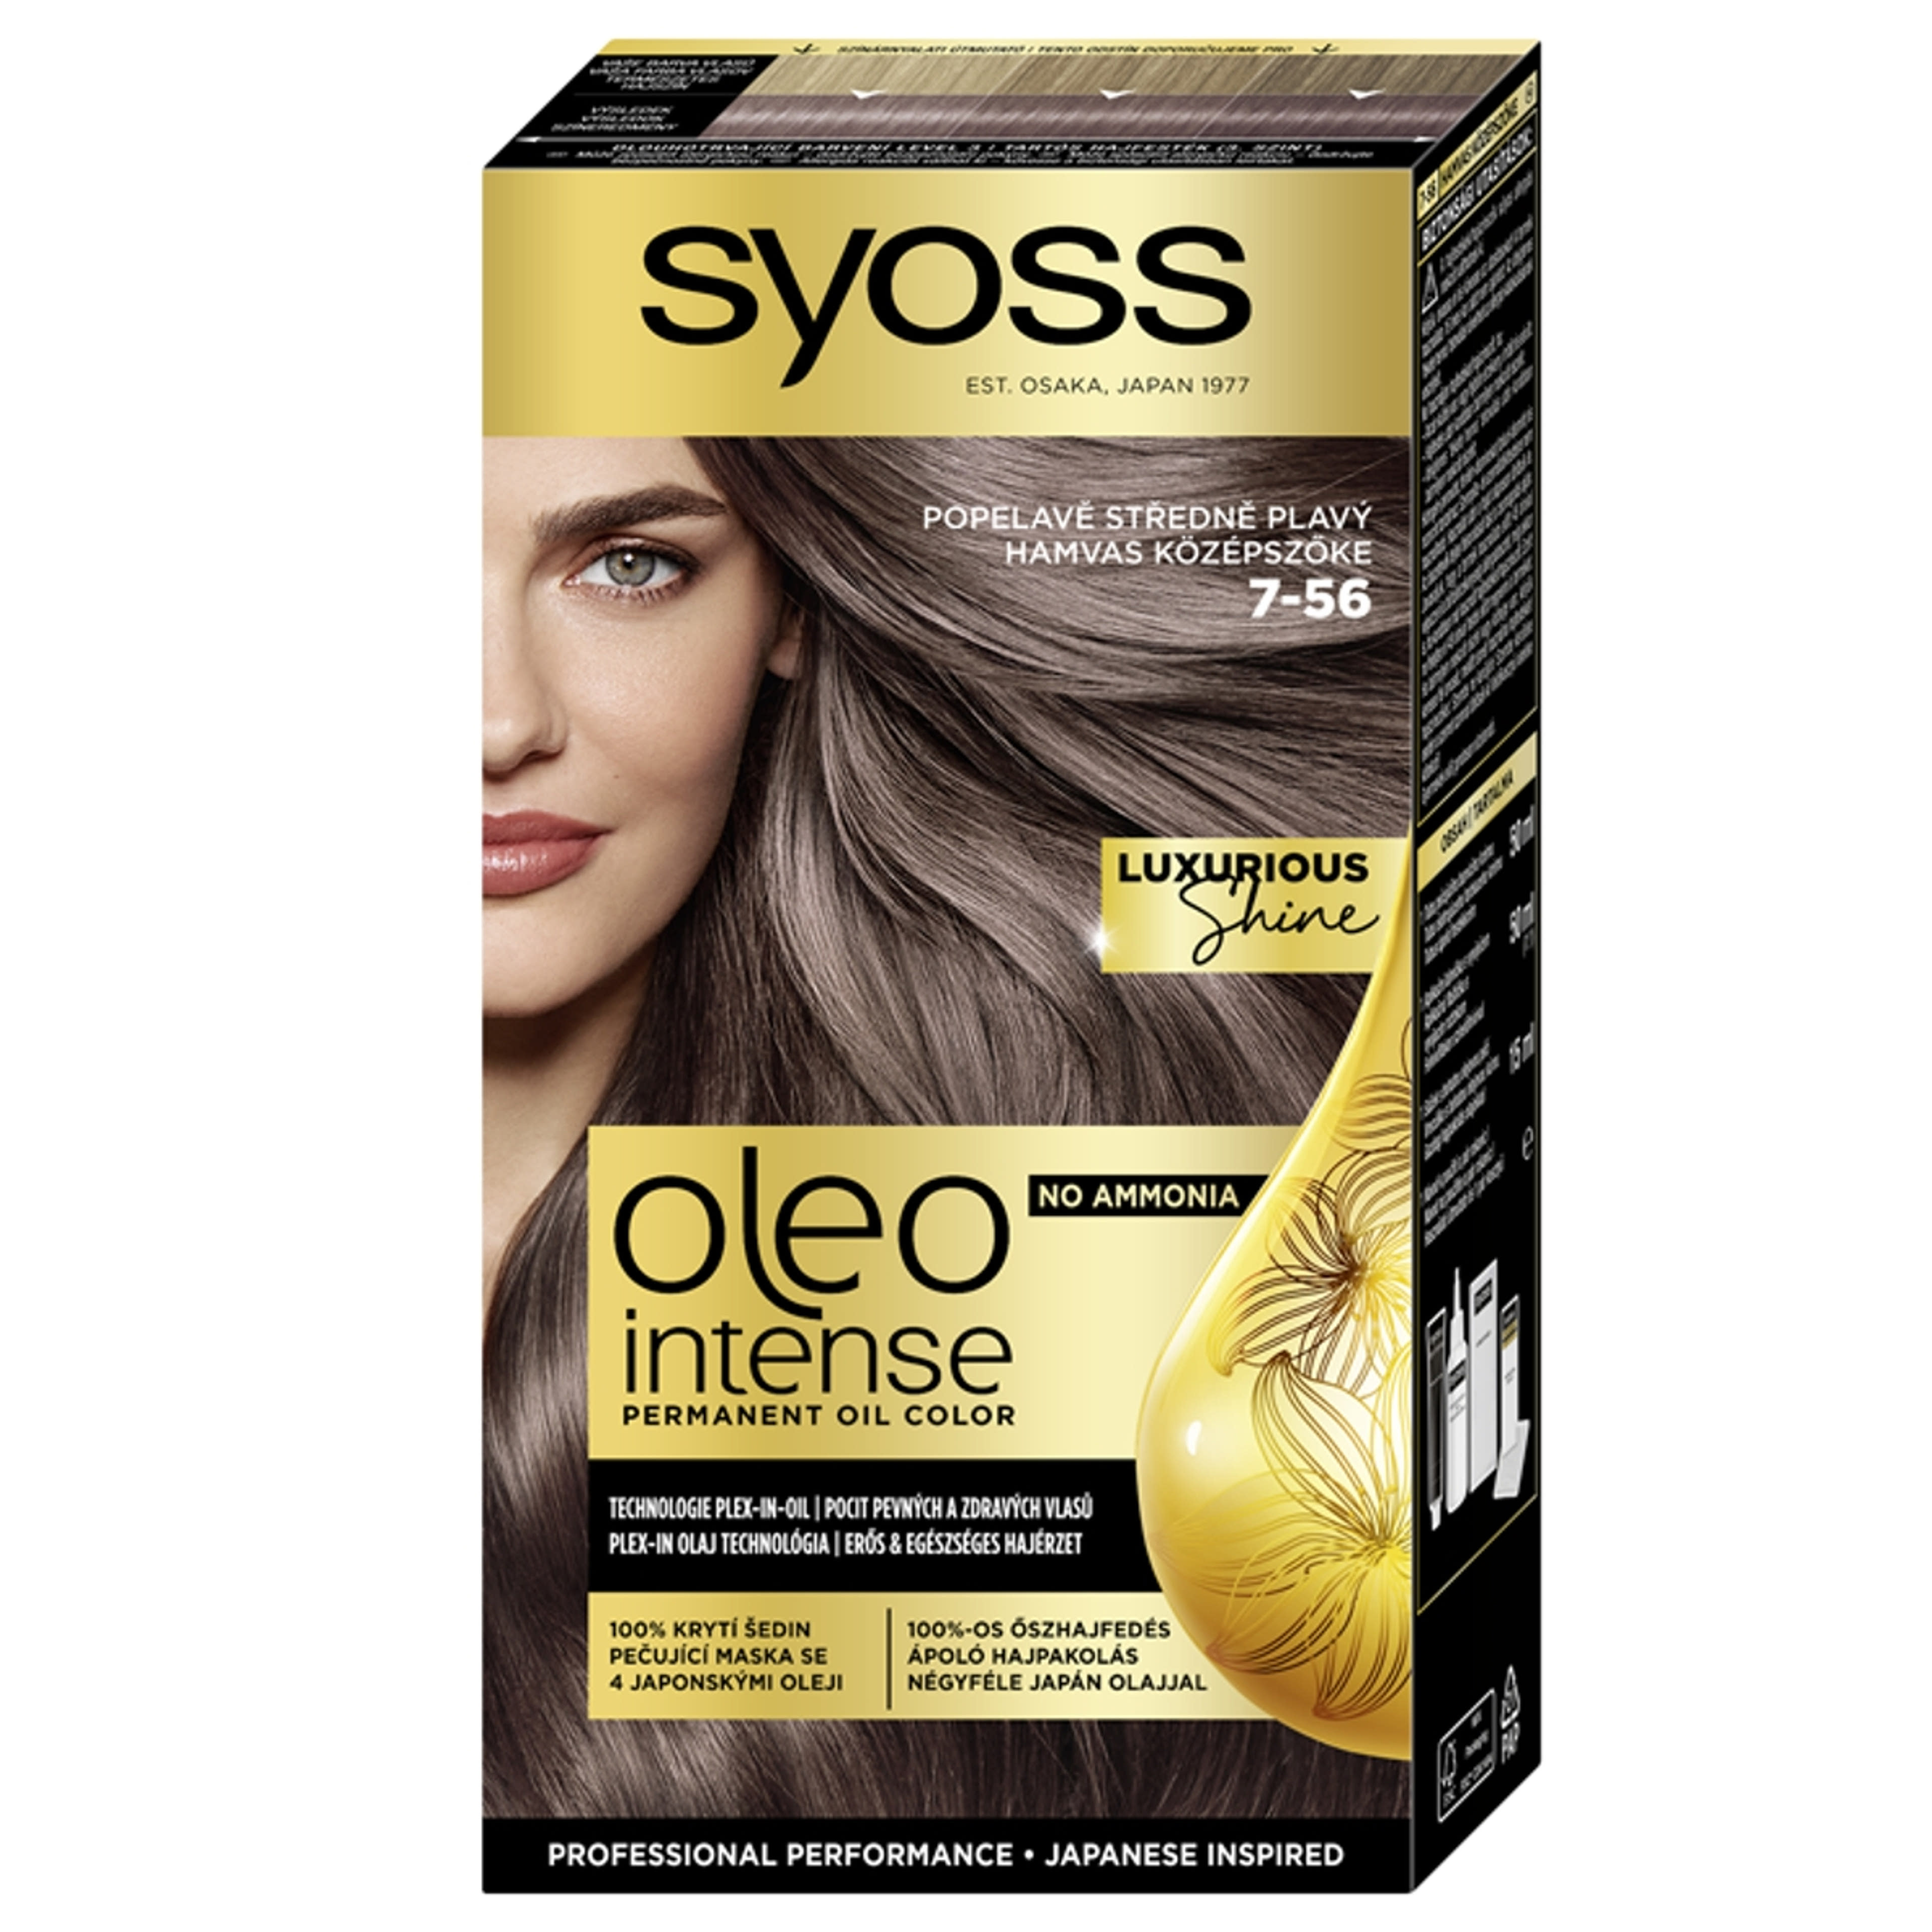 Syoss Oleo Intense tartós hajfesték 7-56 hamvas középszőke - 1 db-1